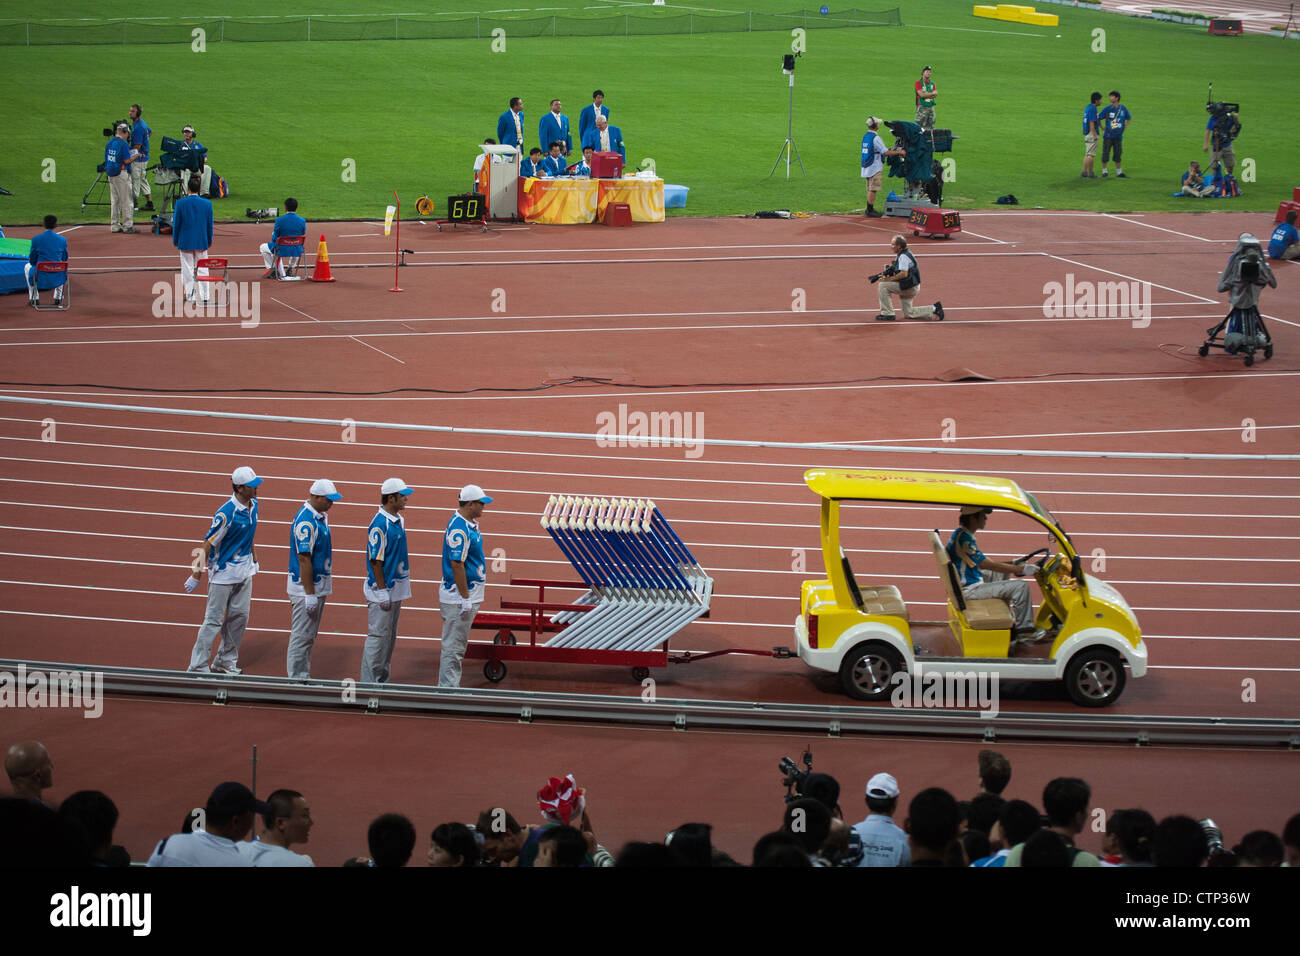 Beijing, Chine - le 16 août 2008 : l'équipe de terrain met en place des obstacles pour l'athlétisme en stade d'oiseaux nichent aux jeux d'été 2008 Banque D'Images